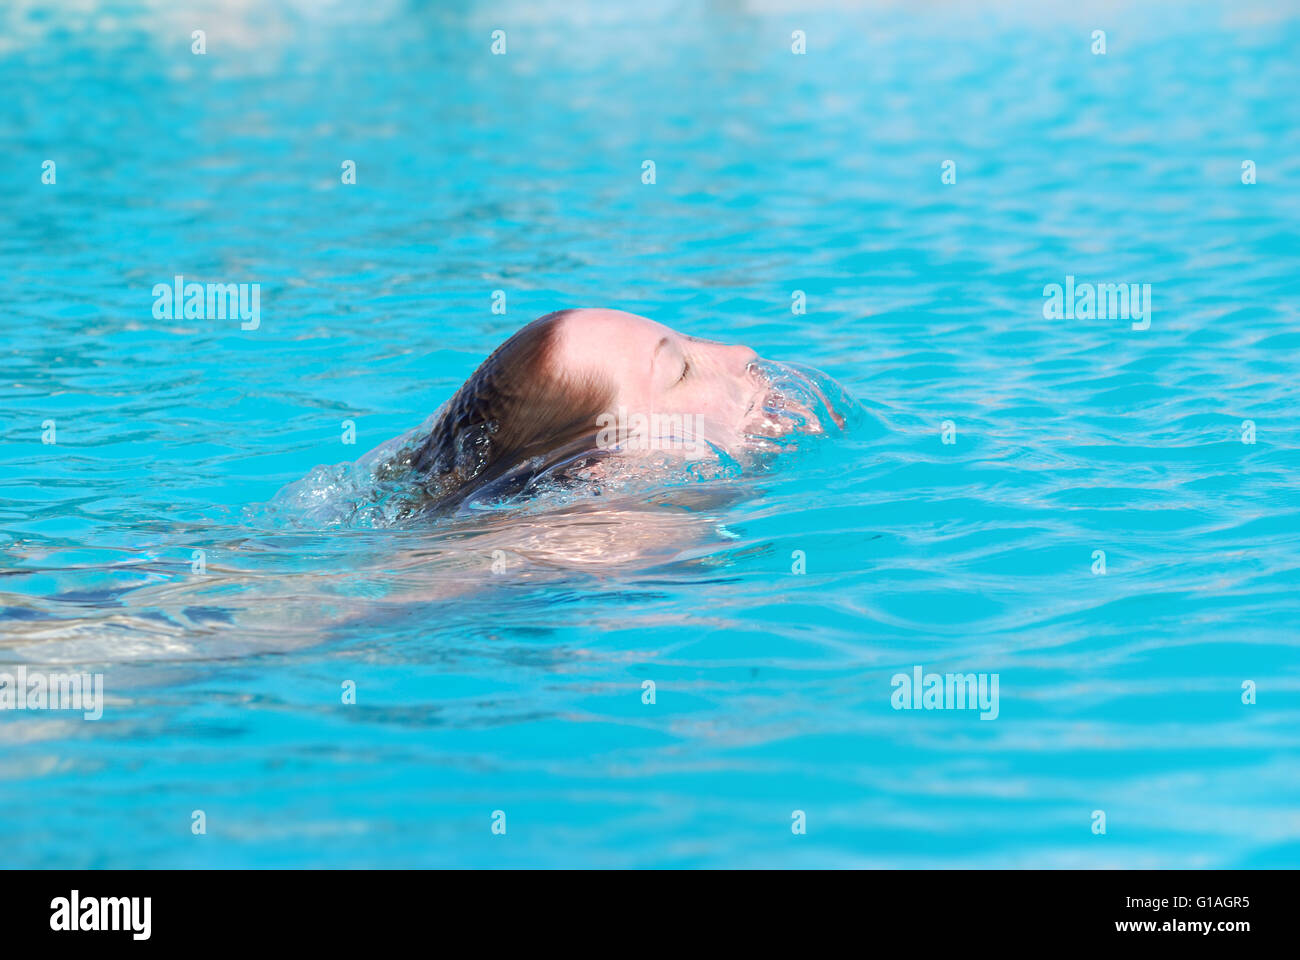 Sunbathing перевод. Женщина плывет в бассейне. Люди плещутся в бассейне. Плескаются в бассейне. Женщина плещется в бассейне.